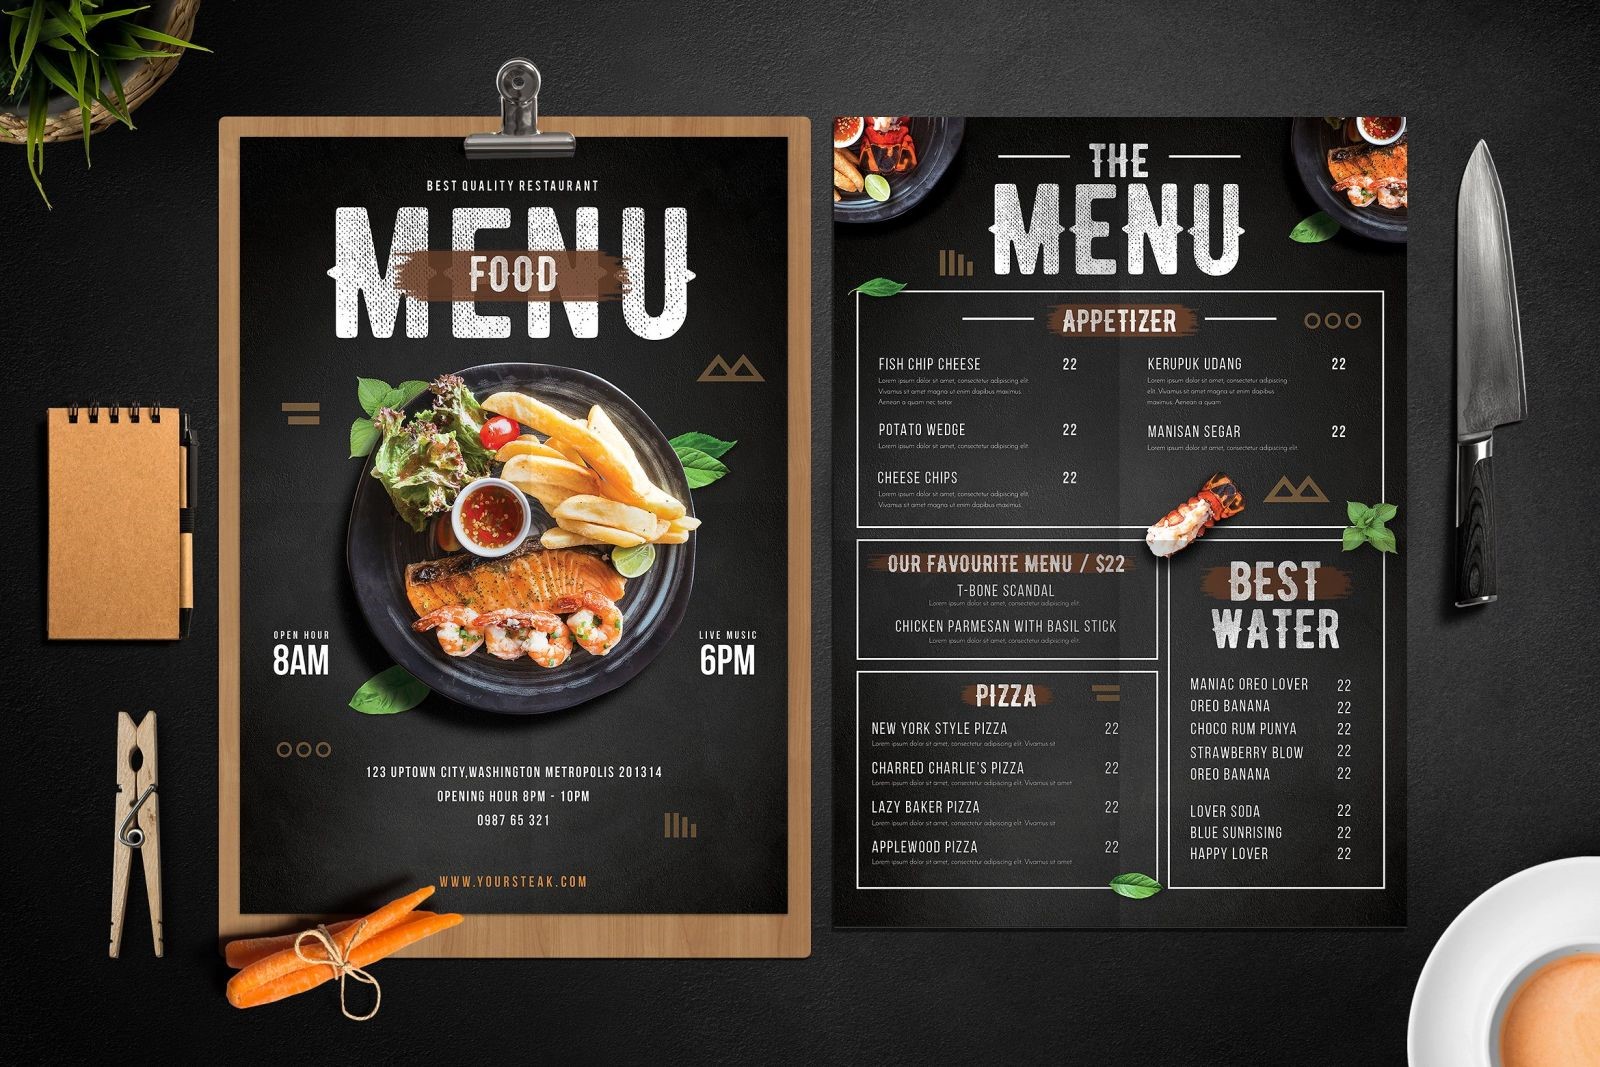 Thiết kế menu thực đơn nhà hàng sang trọng, chuyên nghiệp, thể hiện trọn vẹn tinh thần của món ngon 